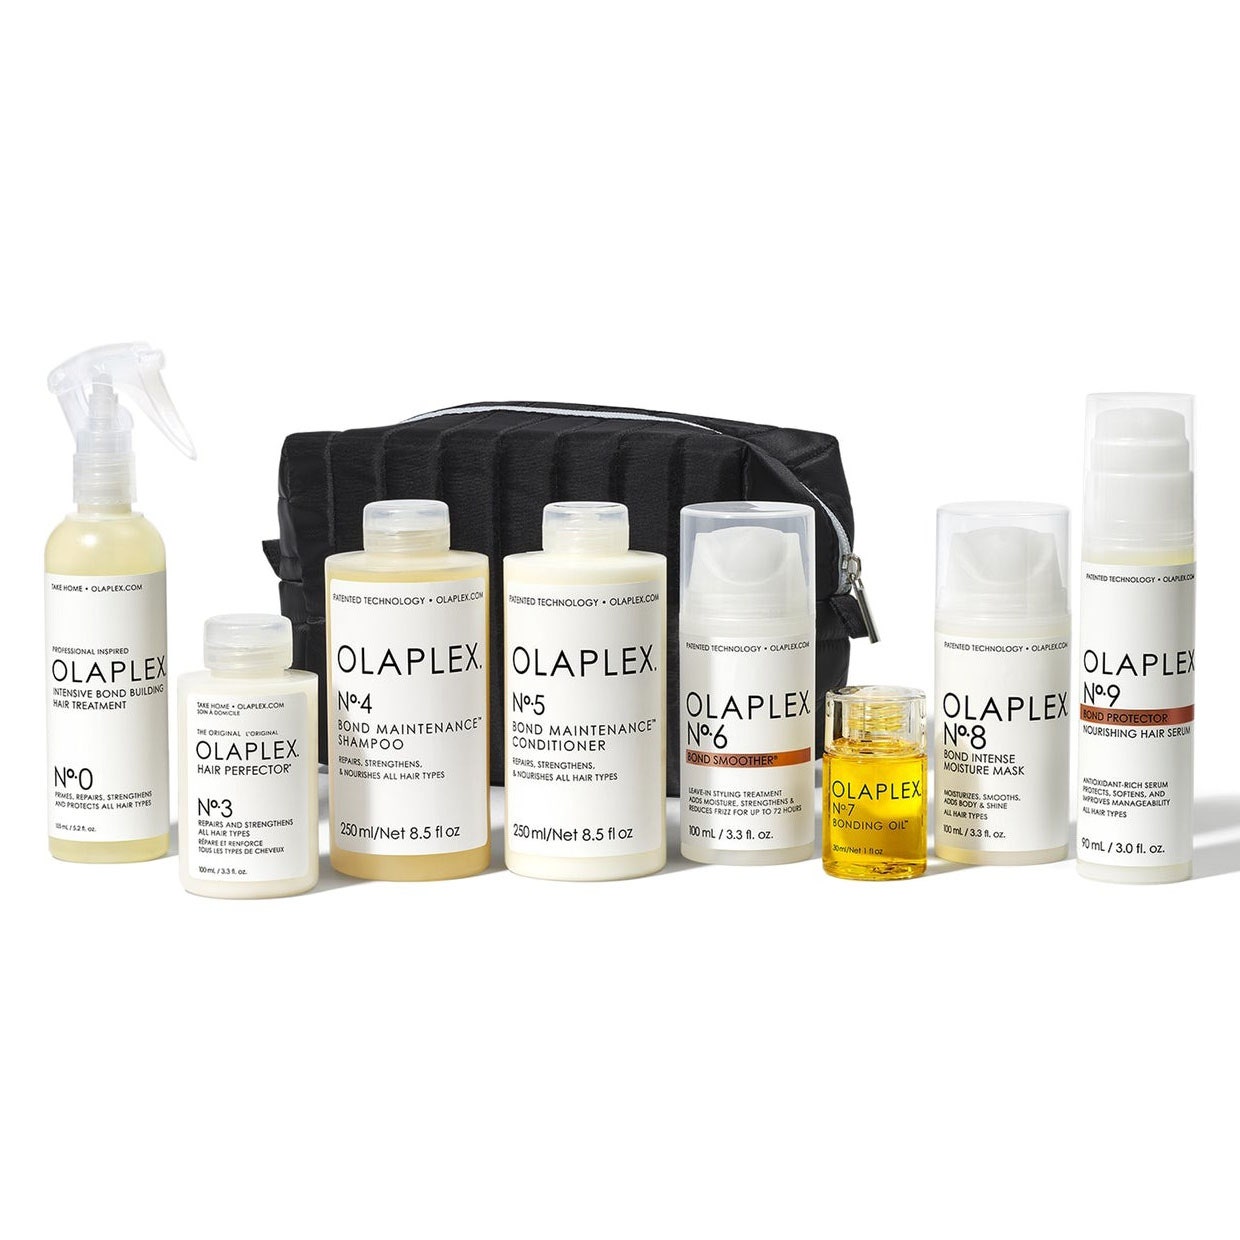 Olaplex Complete Hair Repair System 8 Produkte und schwarze Tasche auf weißem Hintergrund